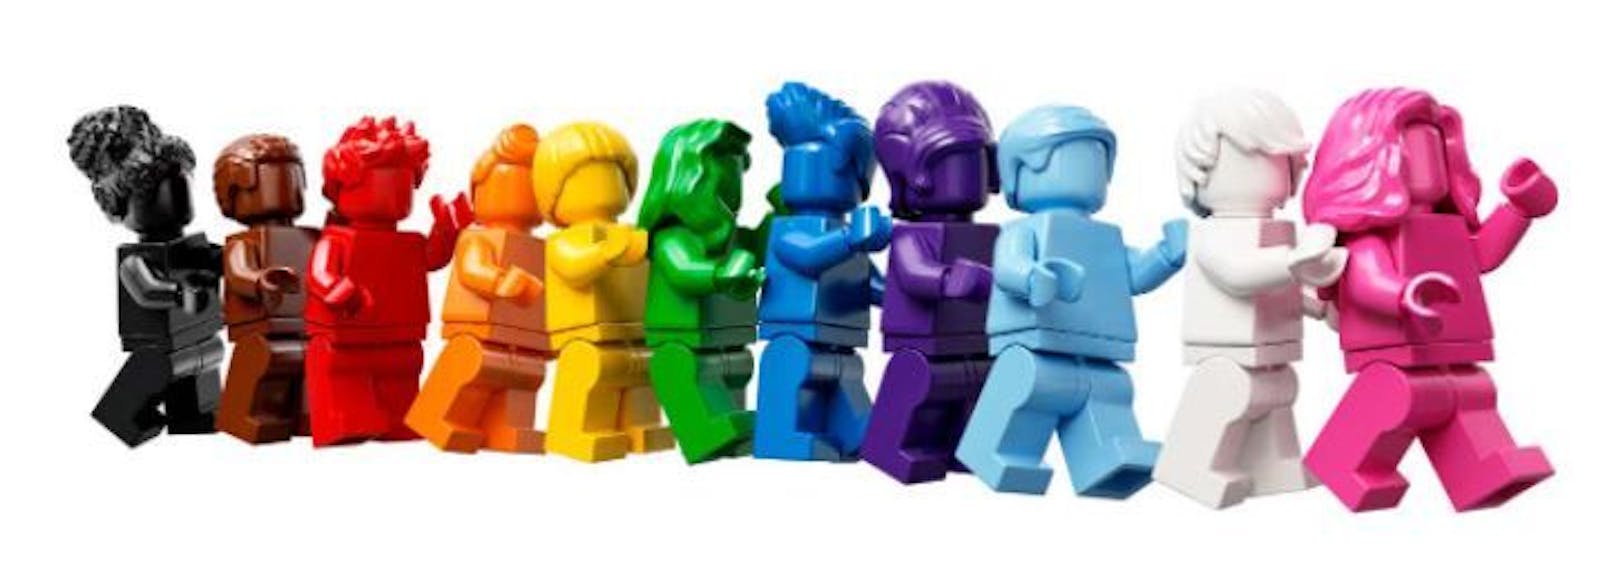 Bunte Vielfalt - dafür will Lego mit dem neuen Set stehen.